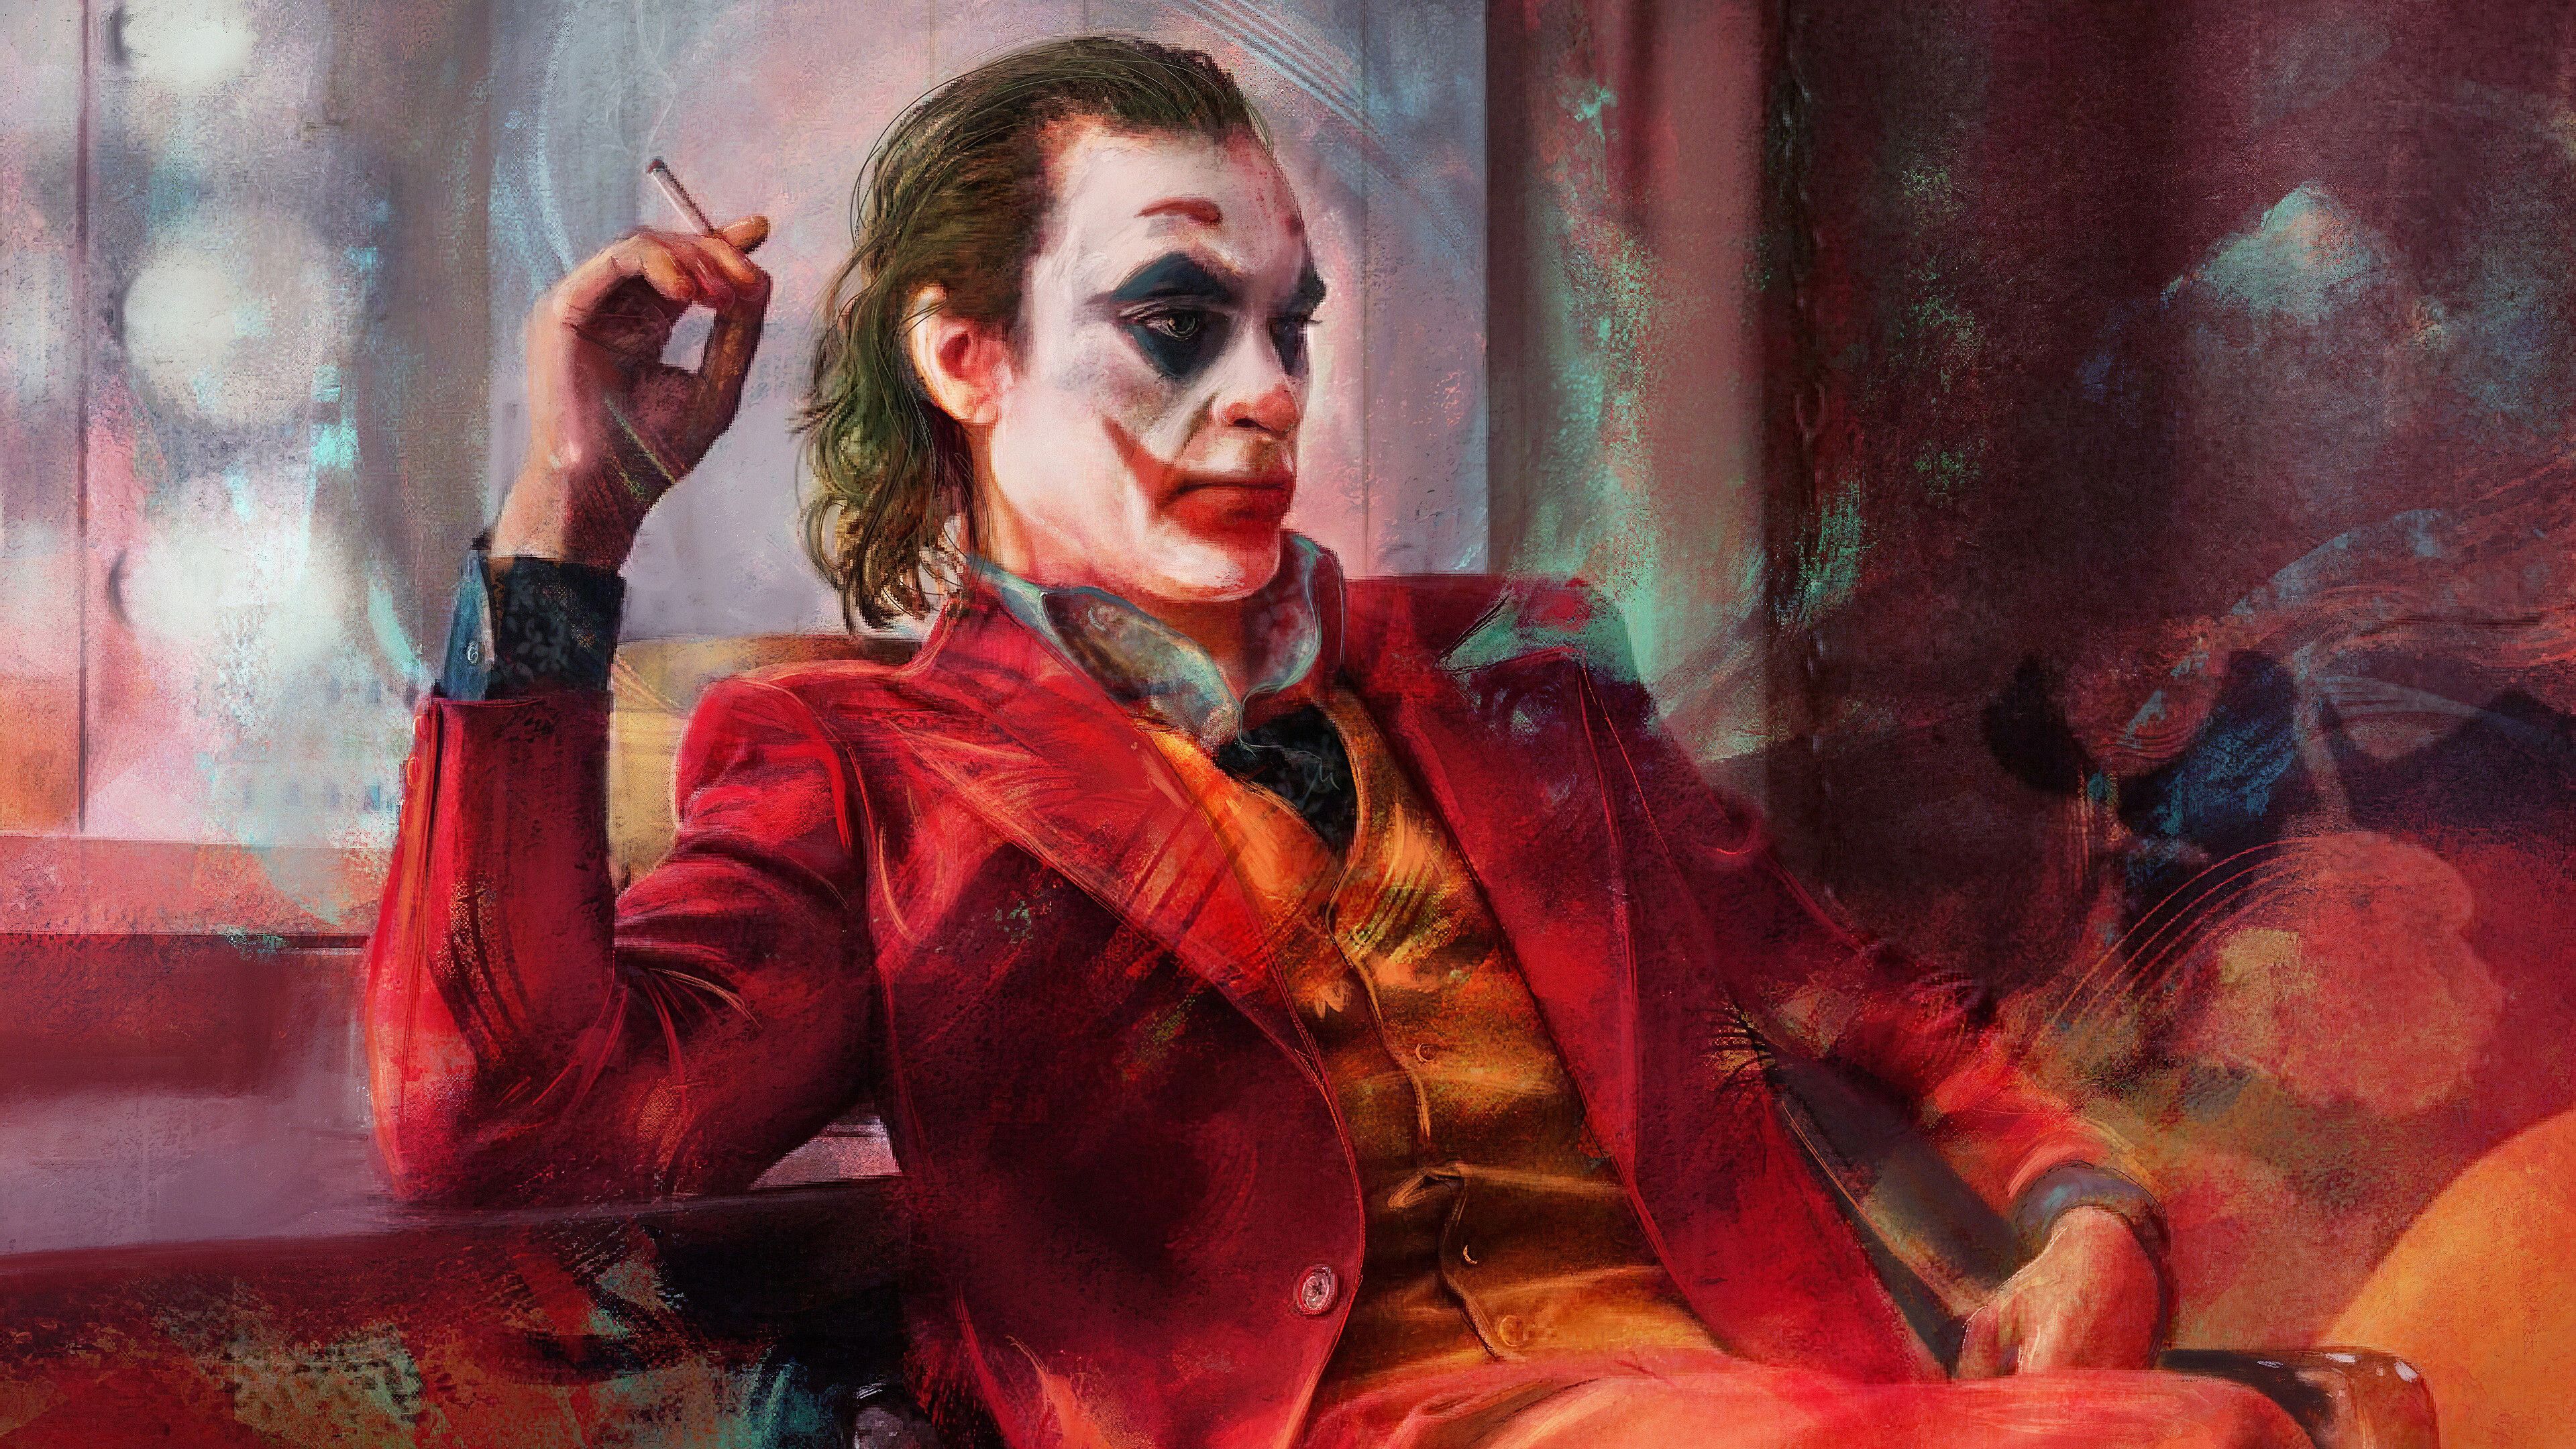 Joaquin Phoenix Joker 4k Wallpapers - Wallpaper Cave